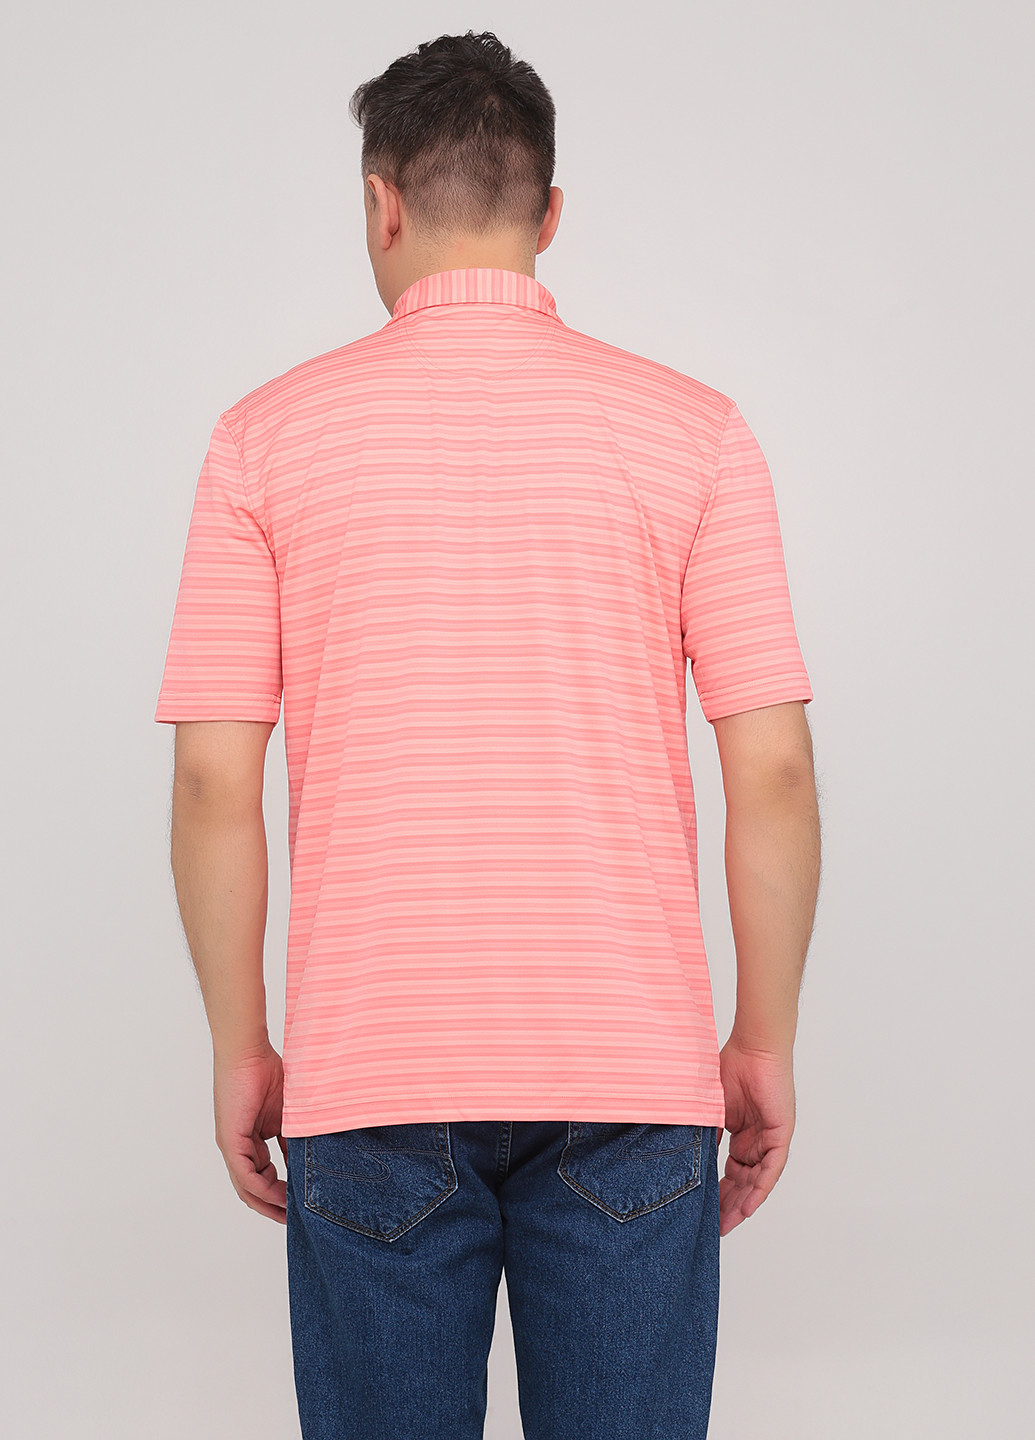 Коралловая футболка-поло для мужчин Greg Norman в полоску